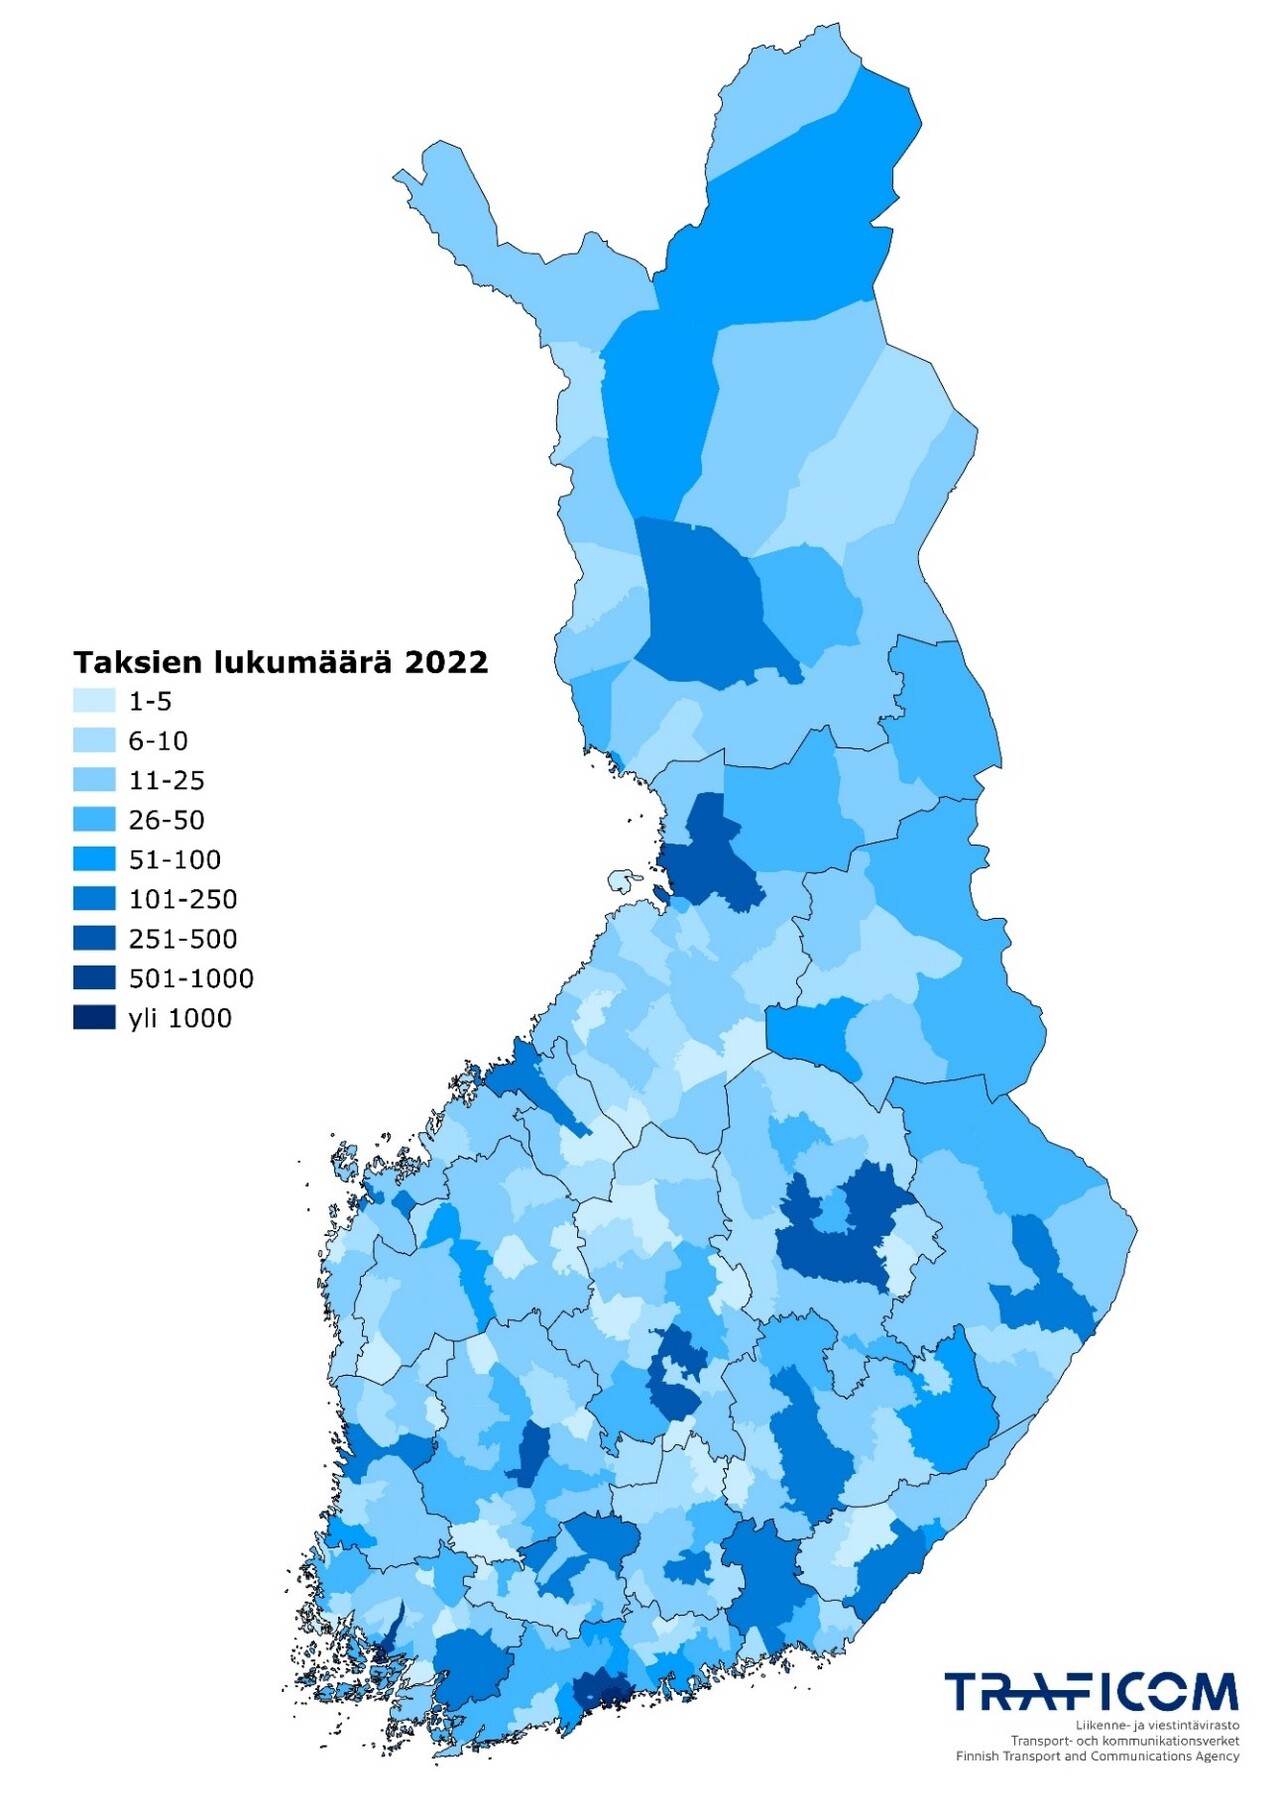 Suomen kartalla on esitetty taksitarjontaluku oletetun toimialuepeiton mukaan 2022